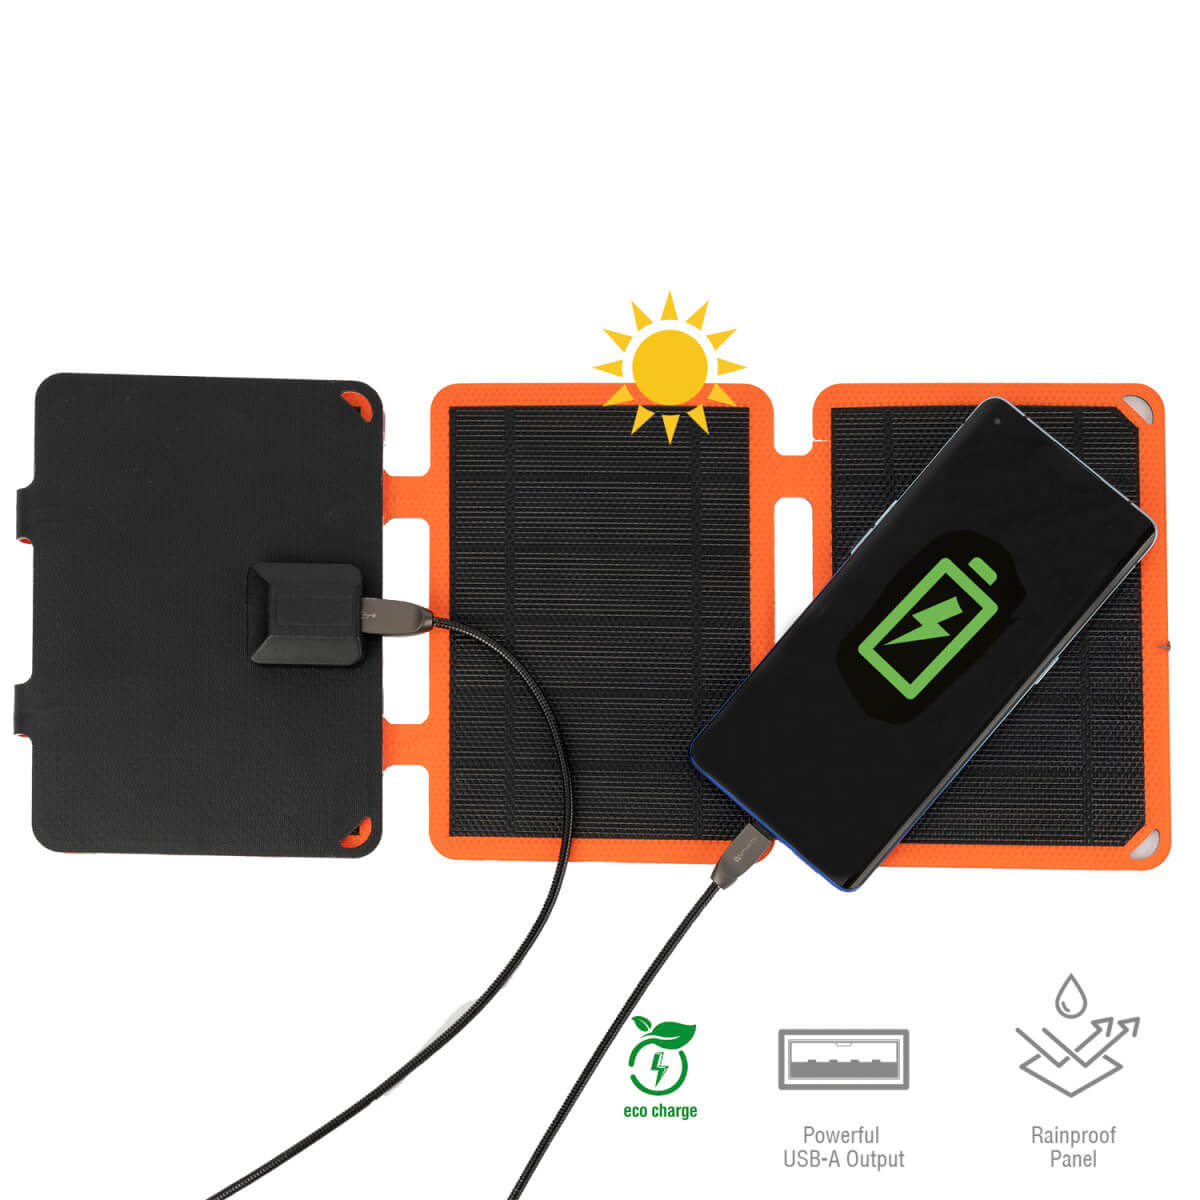 4smarts Compact Solar Panel 10W USB-A Port - сгъваем соларен панел, зареждащ вашето устройство директно от слънцето (черен-оранжев)